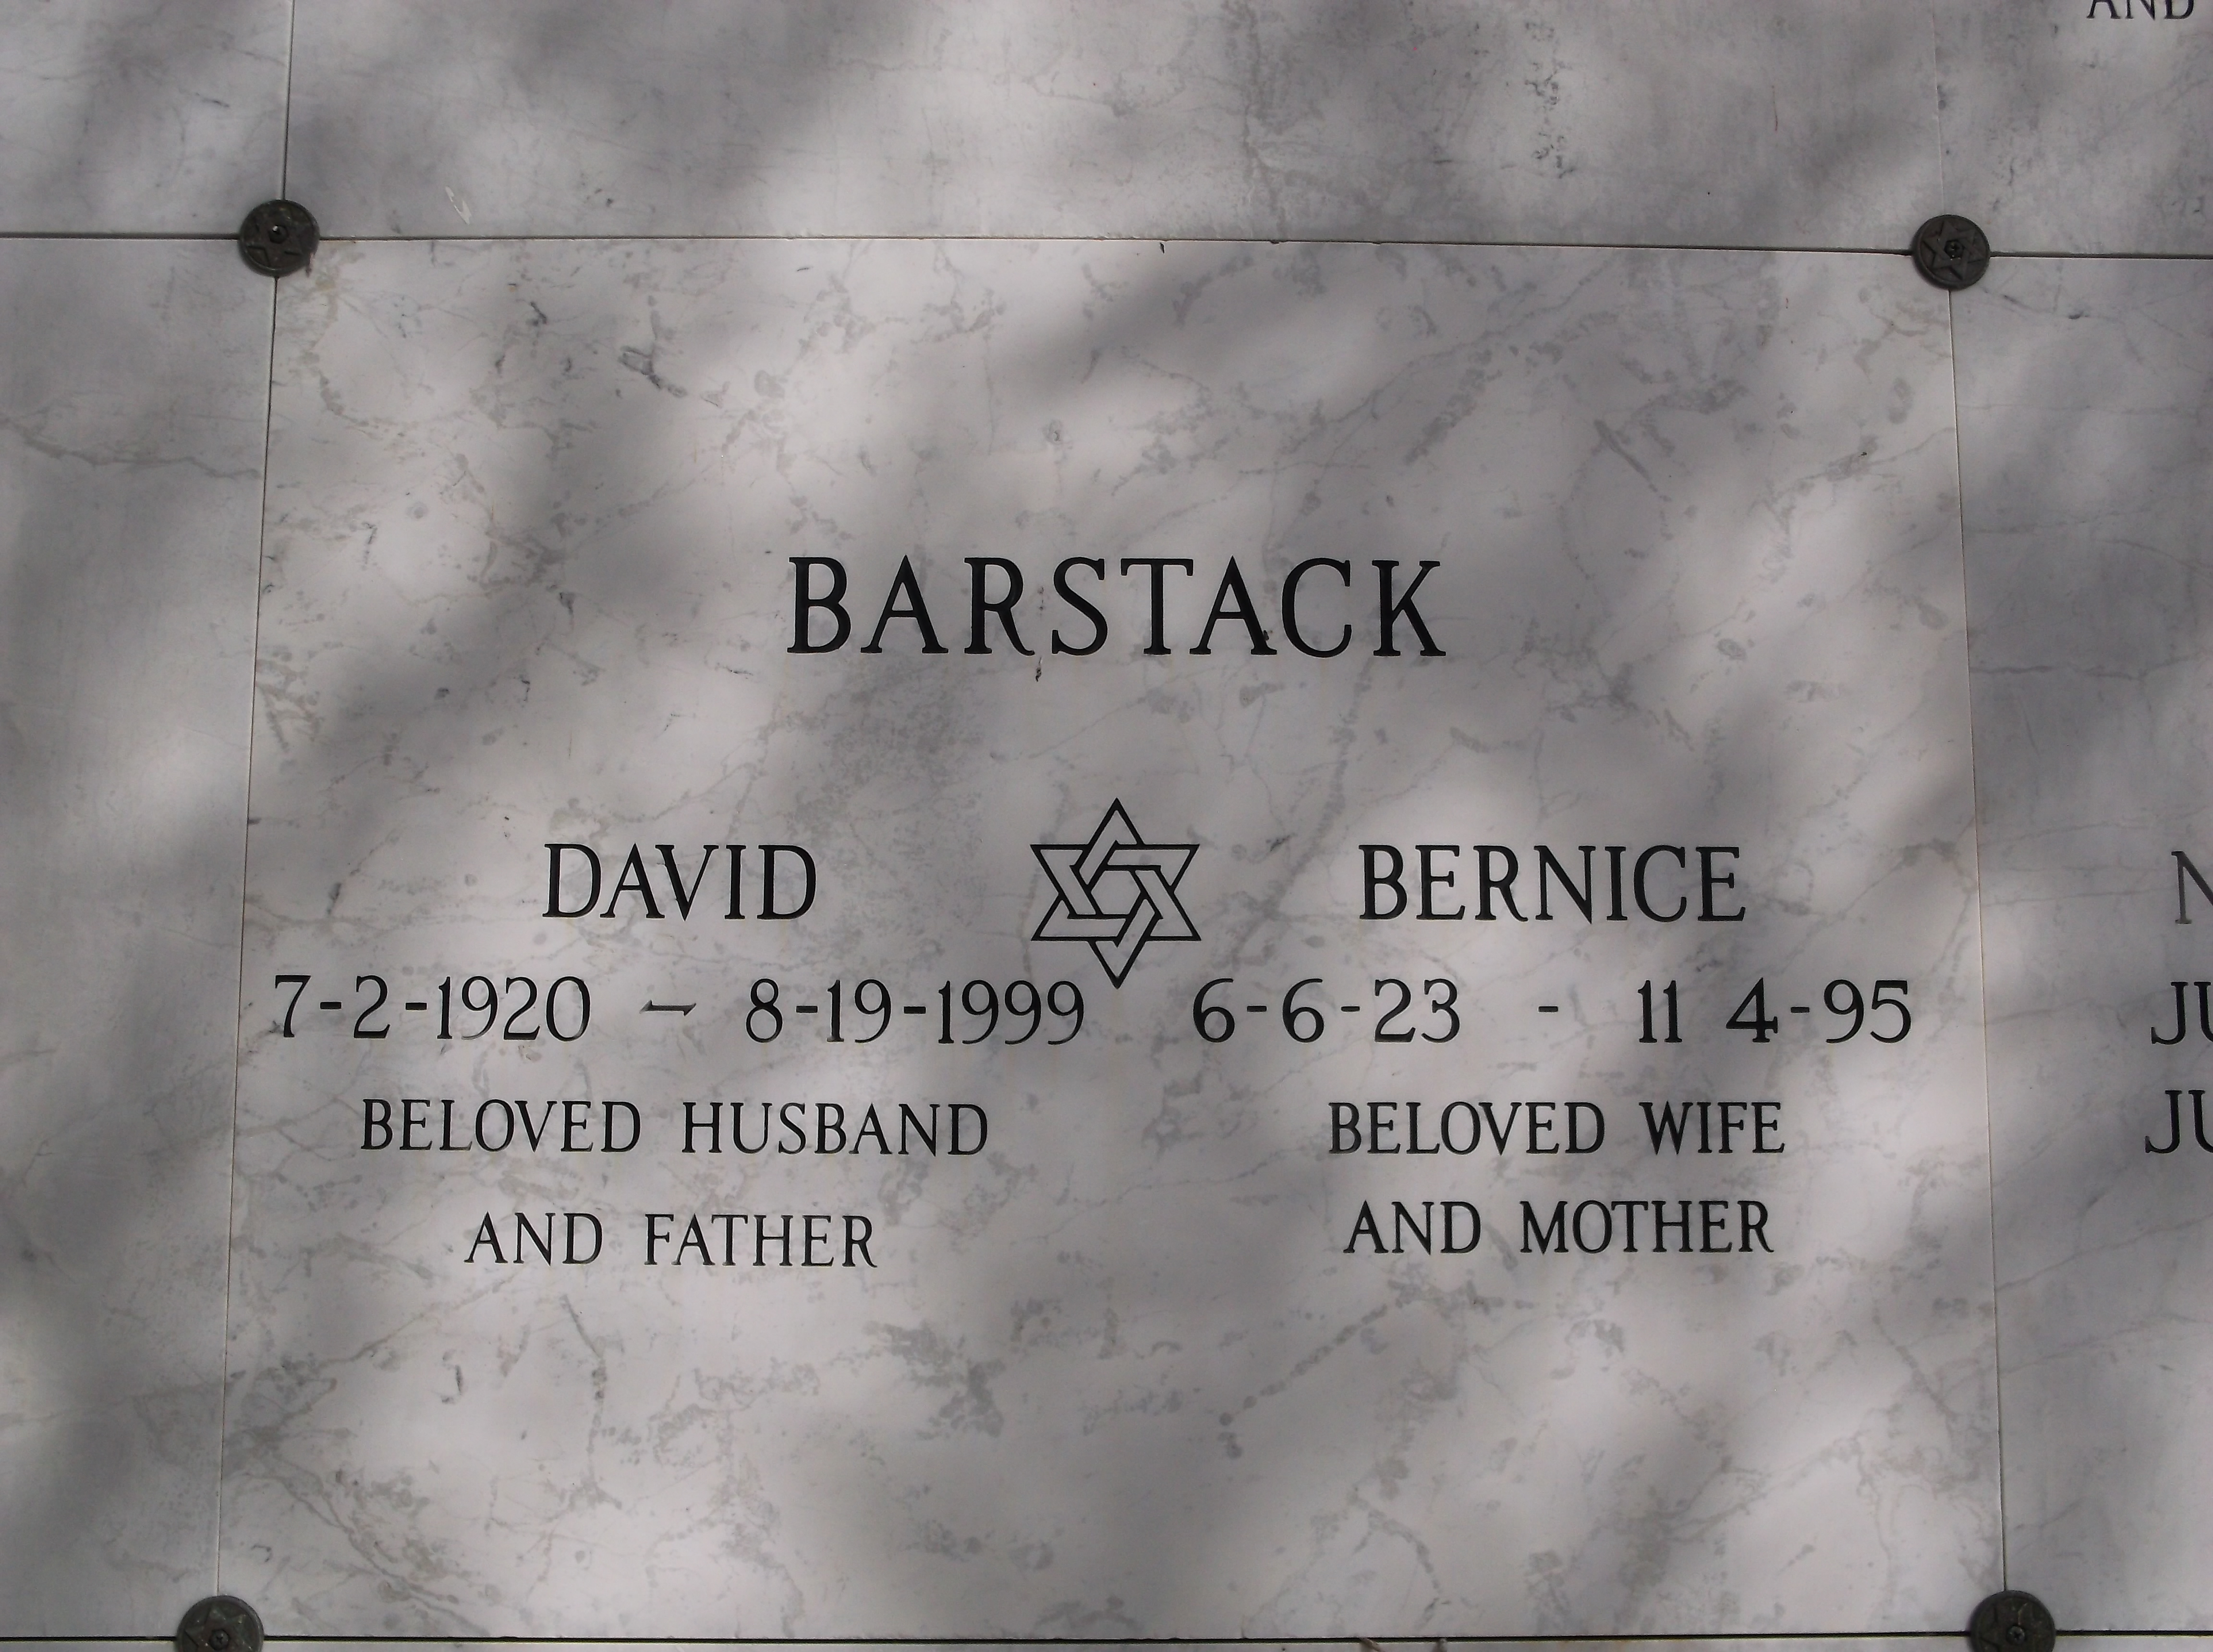 David Barstack